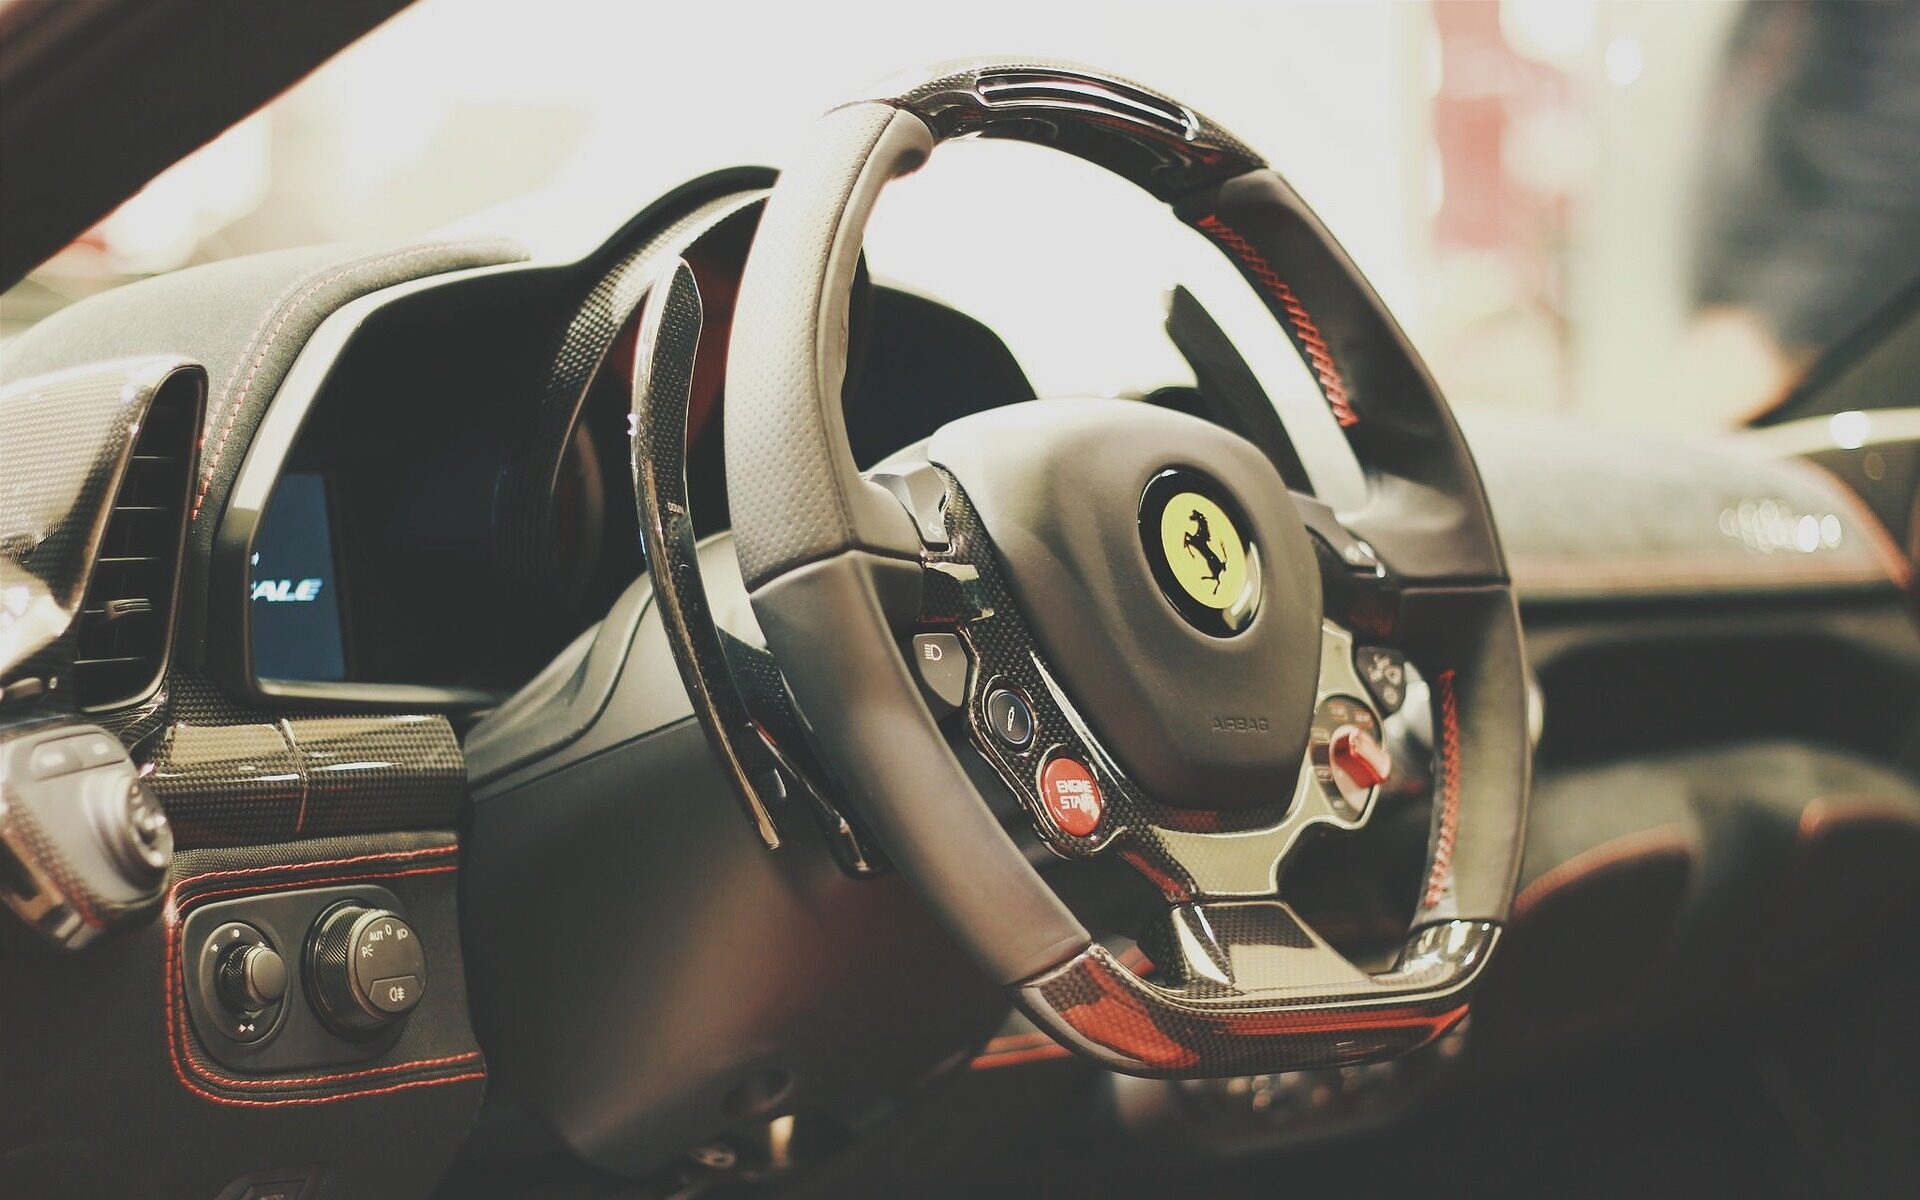 Ferrari © Pixabay